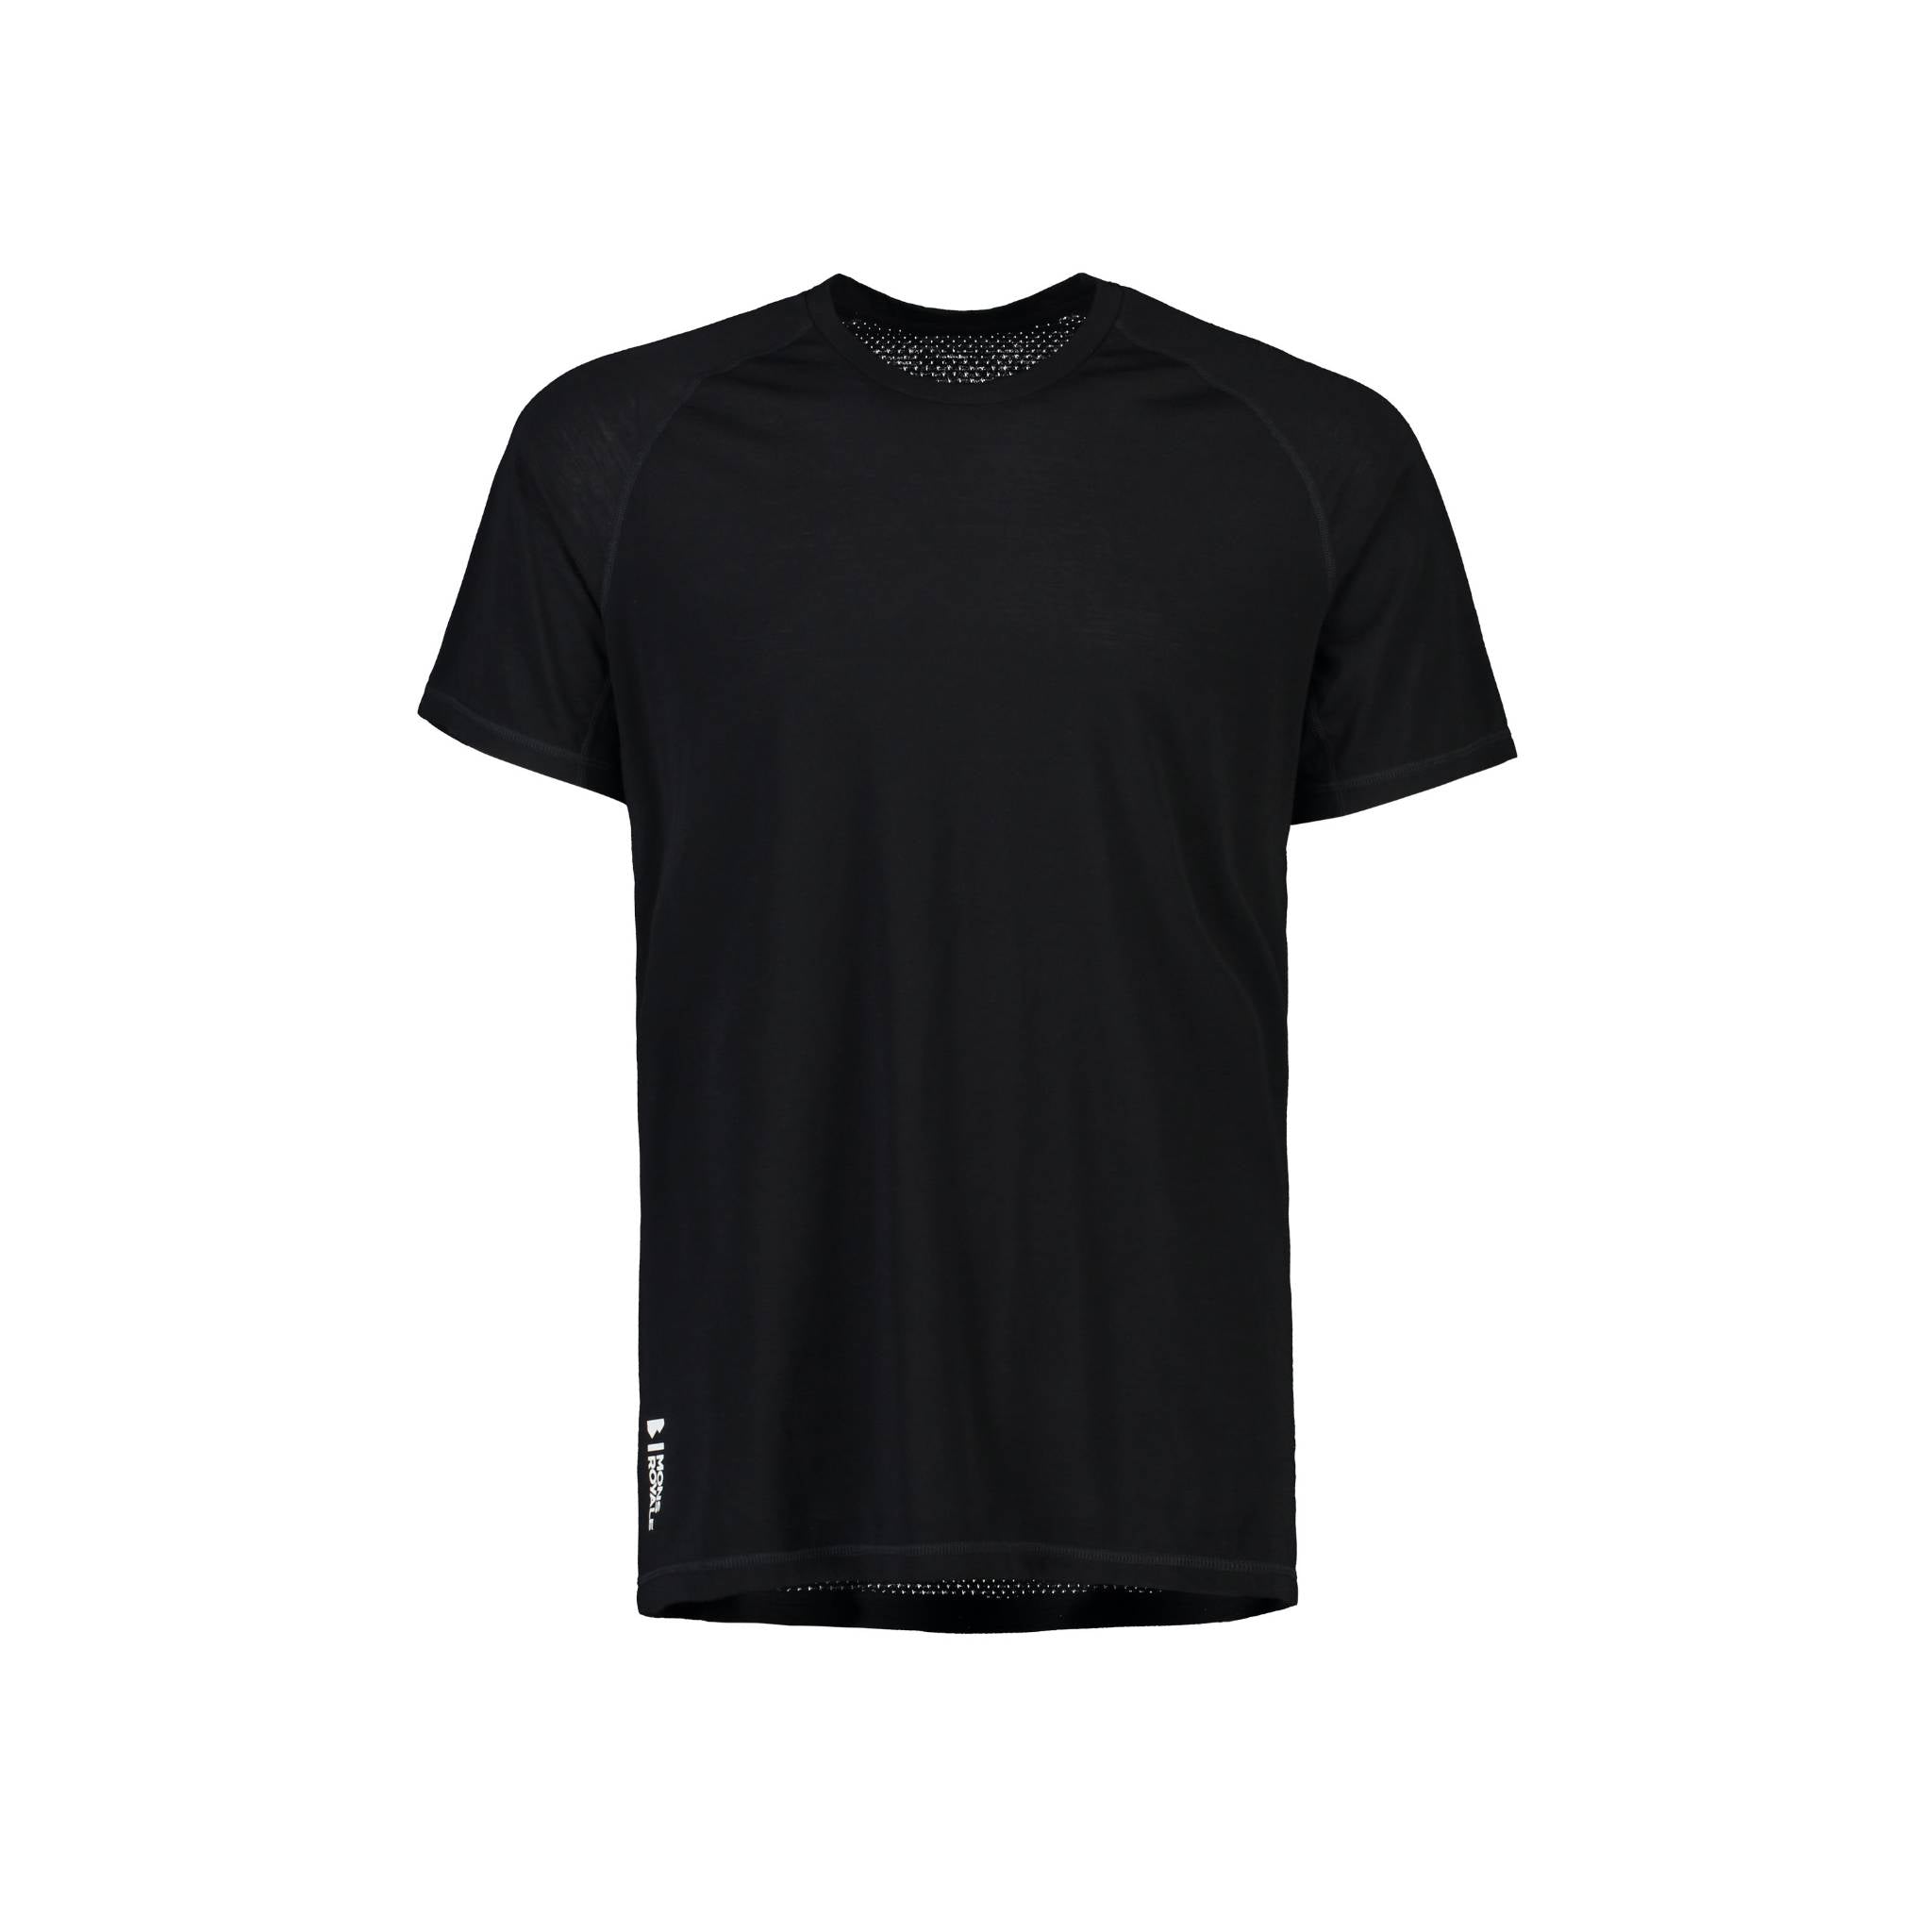 Mons Royale Temple Tech T-Shirt - Black